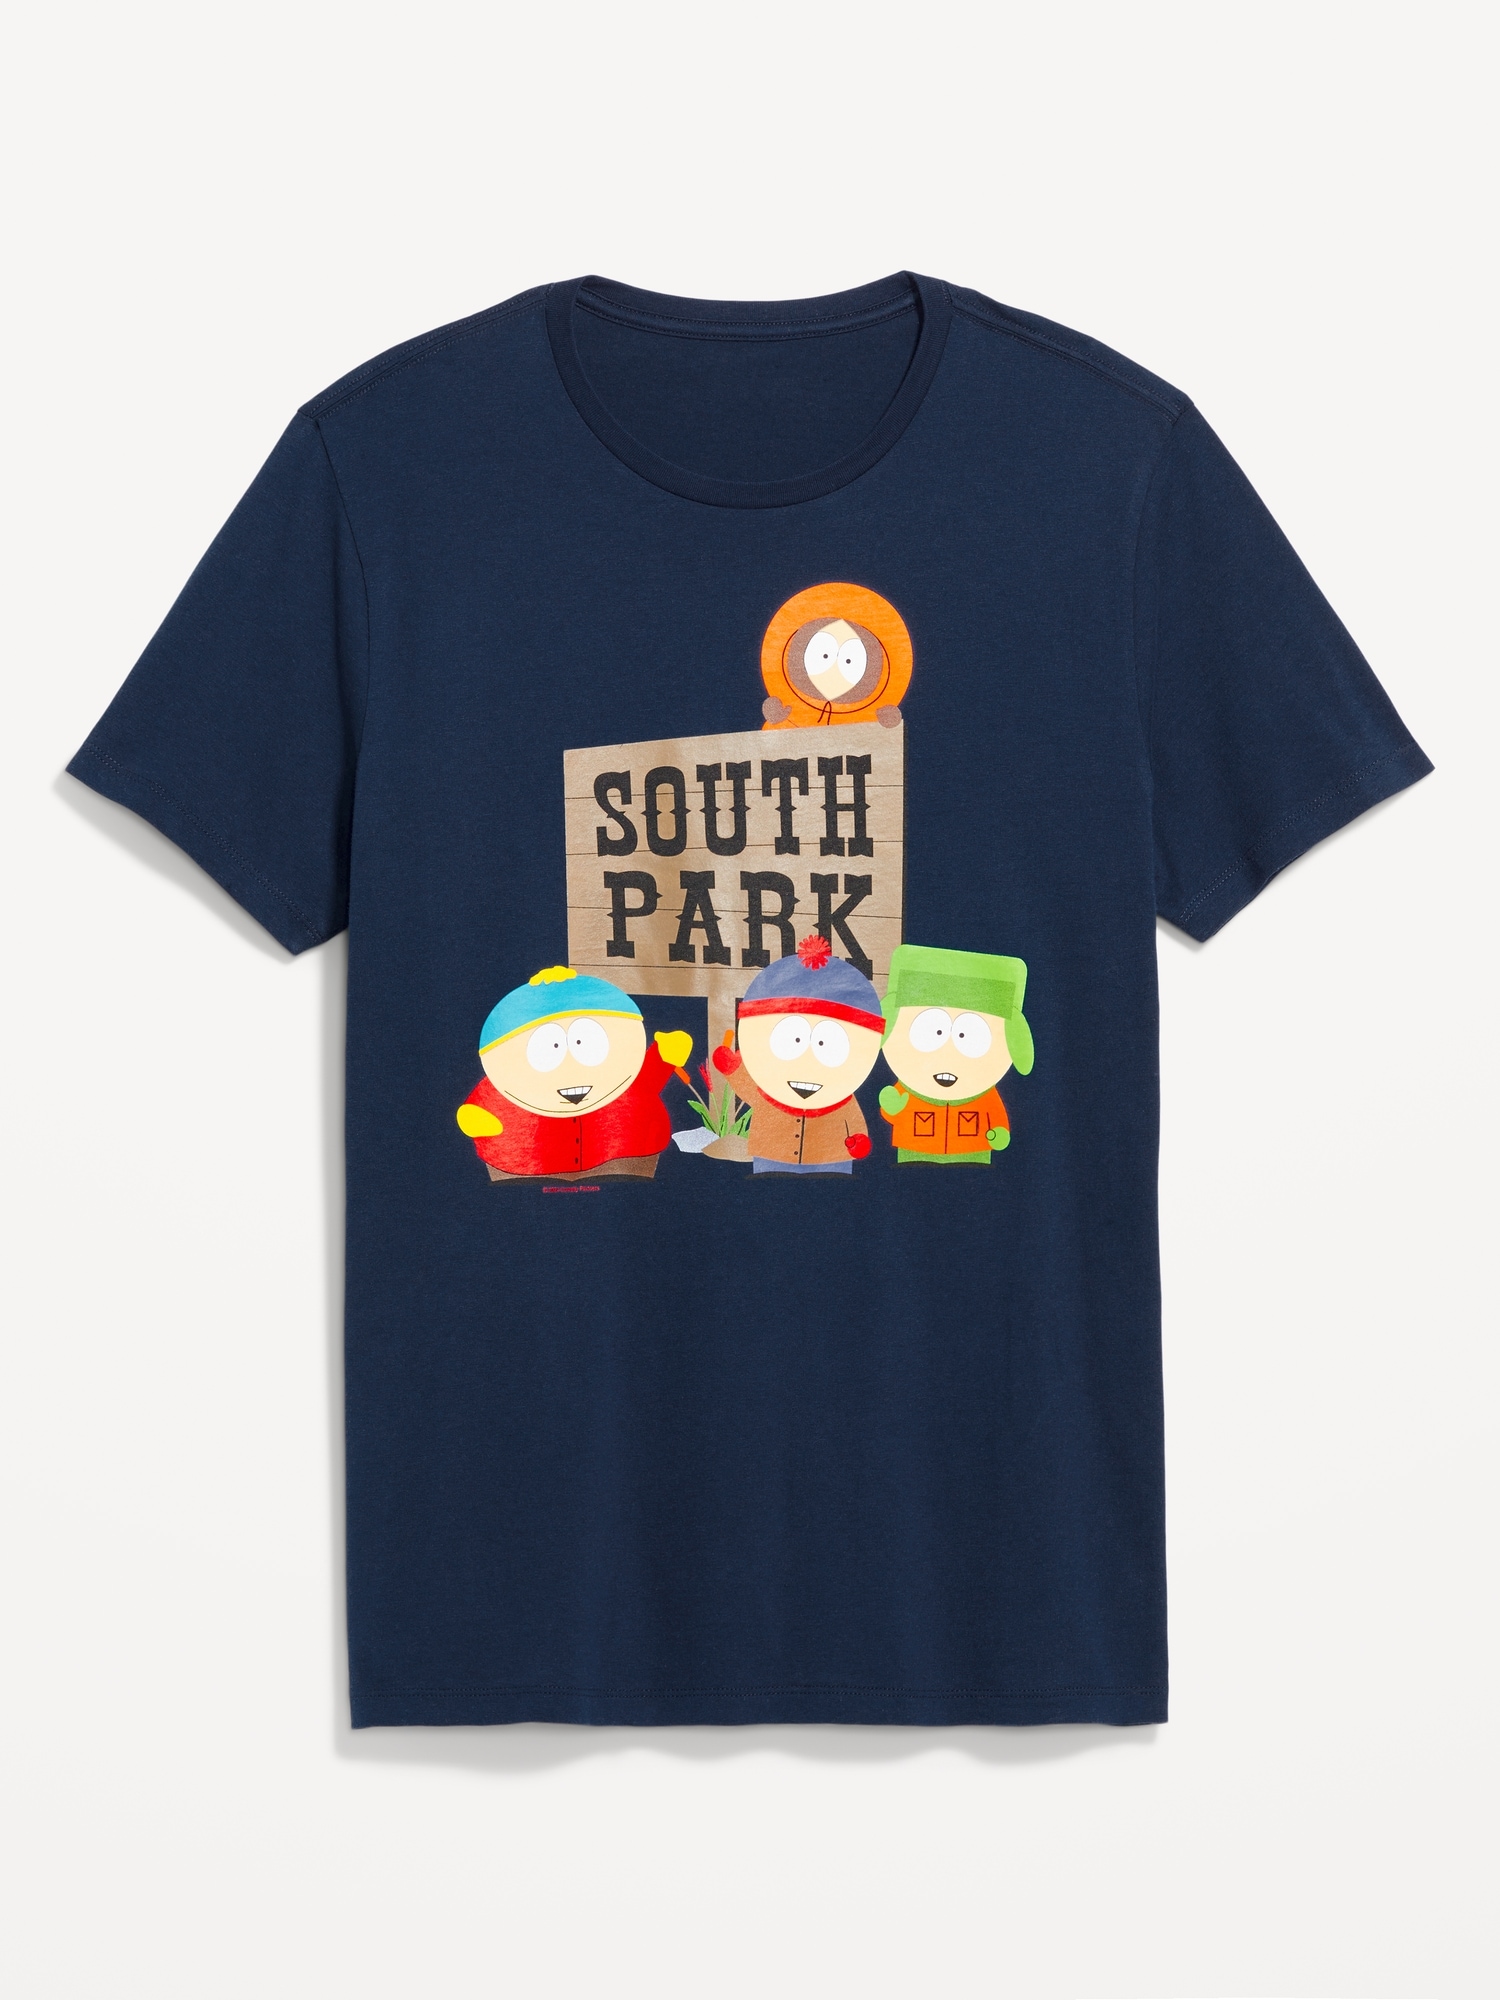 South Park© T-Shirt